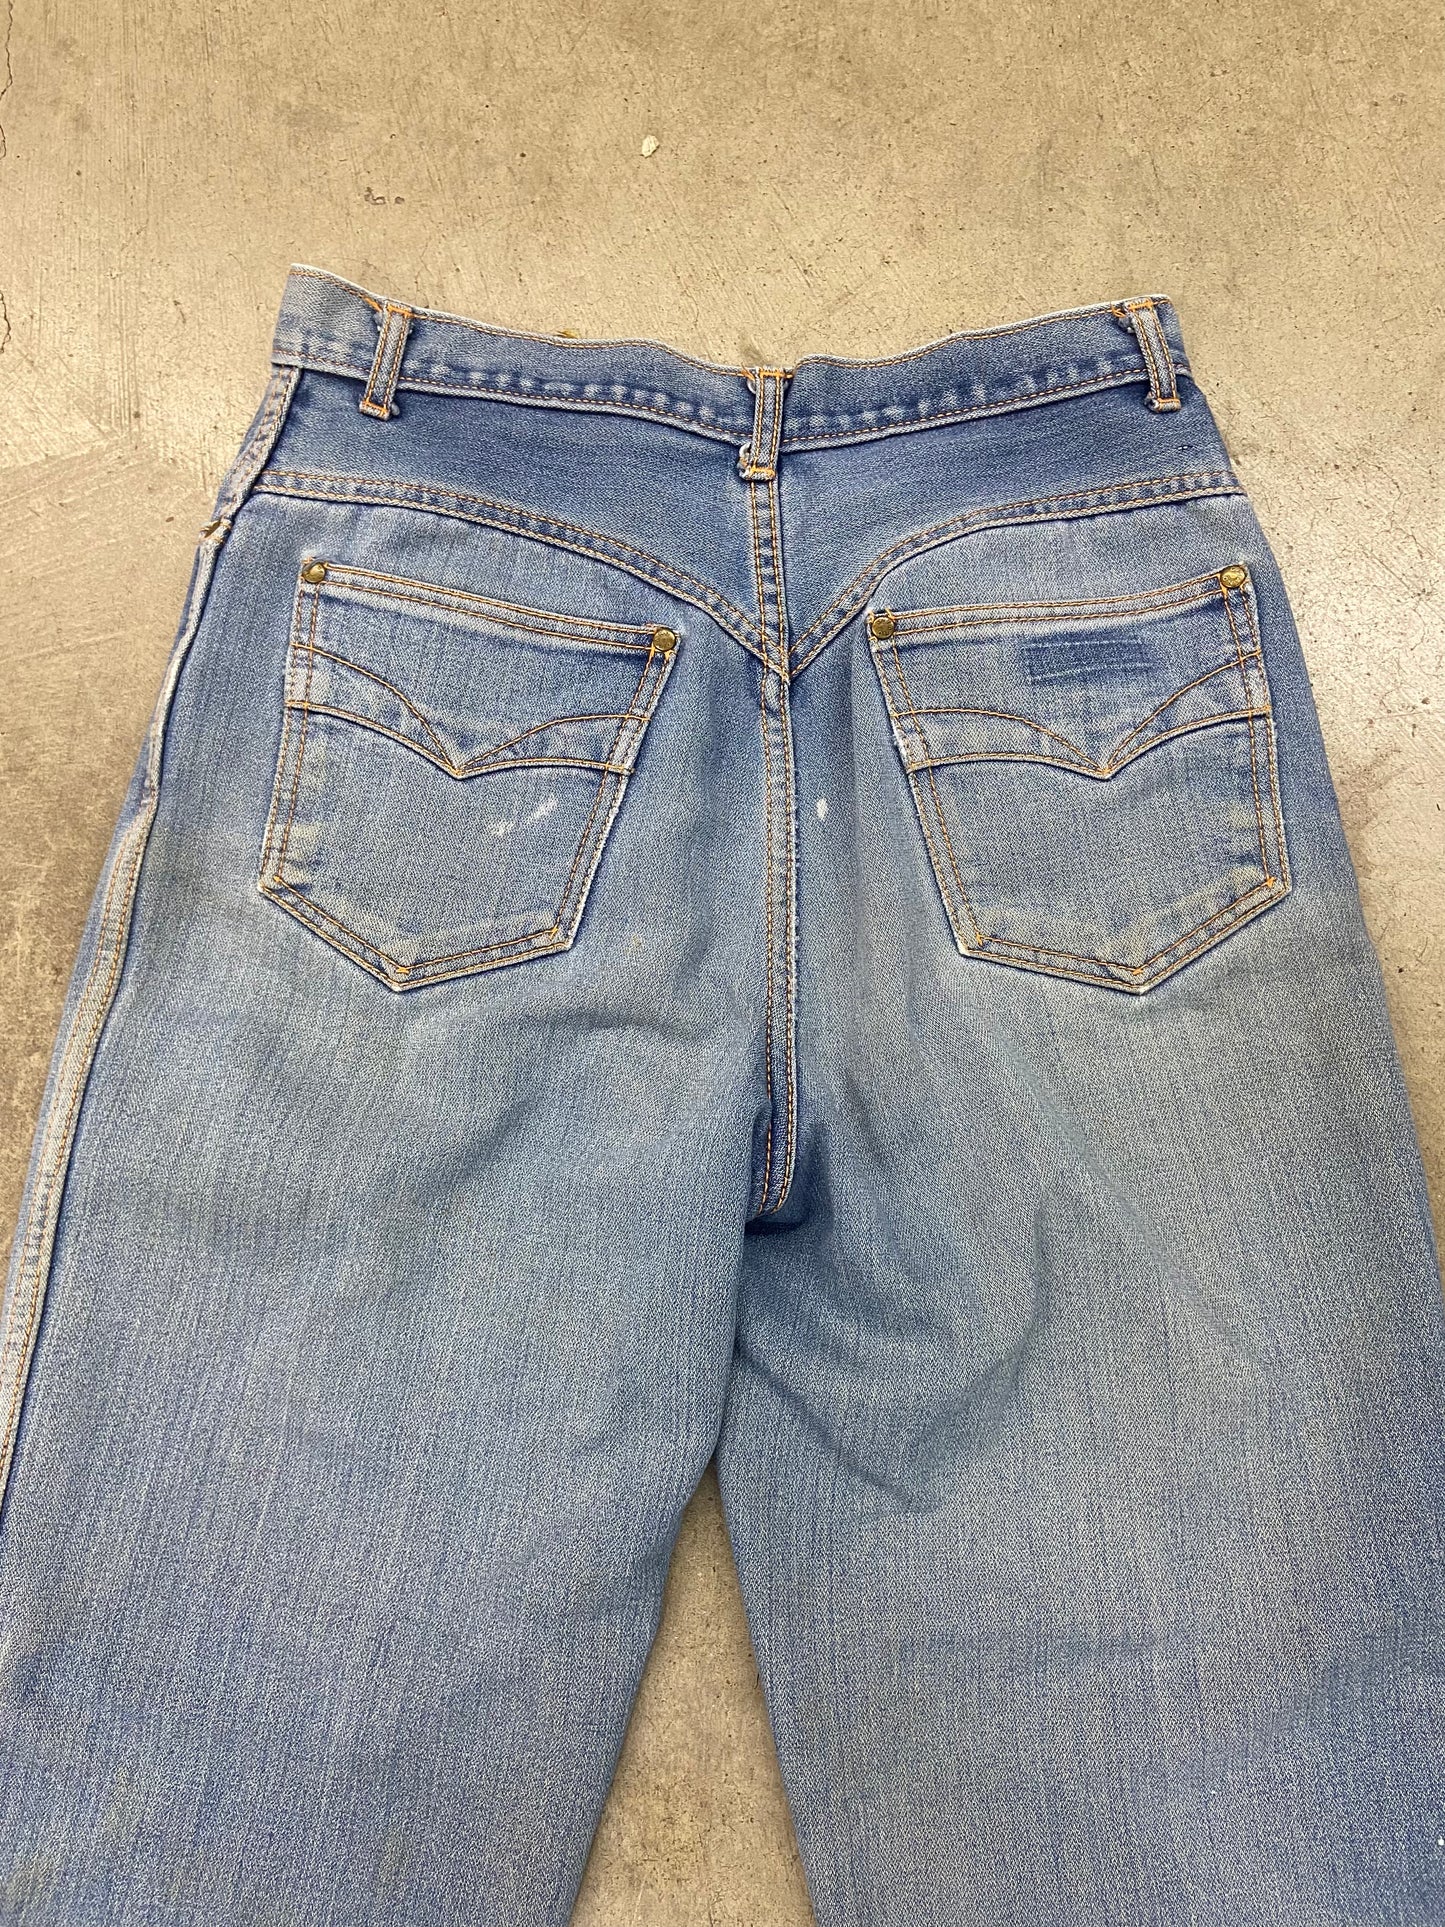 VTG Blue Wash P.S Gitano Jeans Sz 16